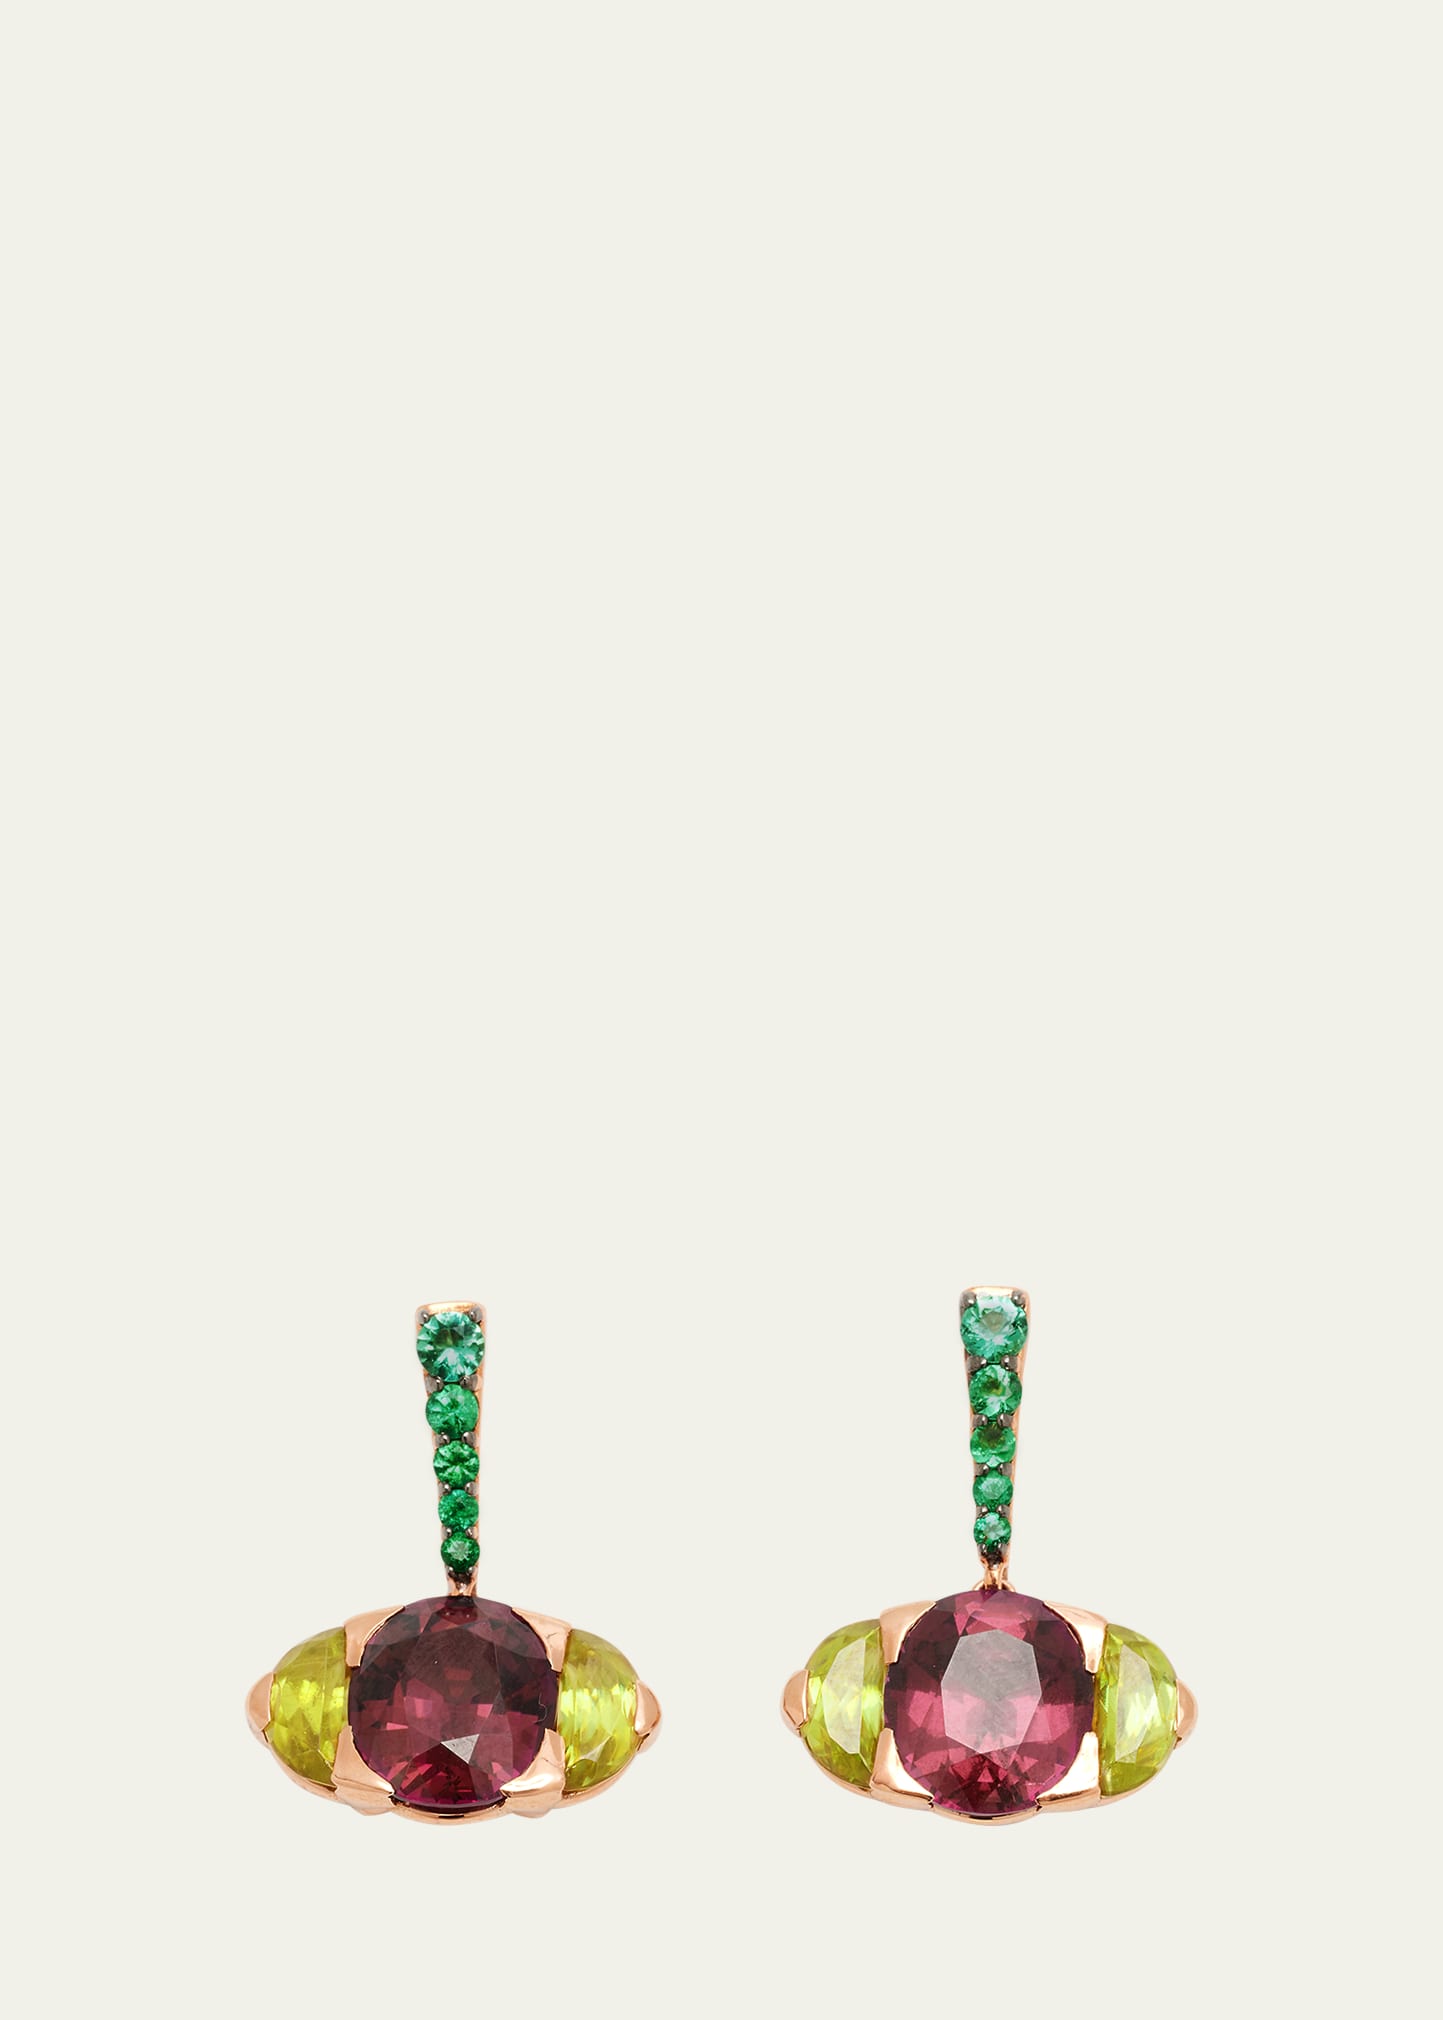 Nak Armstrong Spotlight Earrings With Rhodolite Garnet, Sphene And Emeralds In Rg